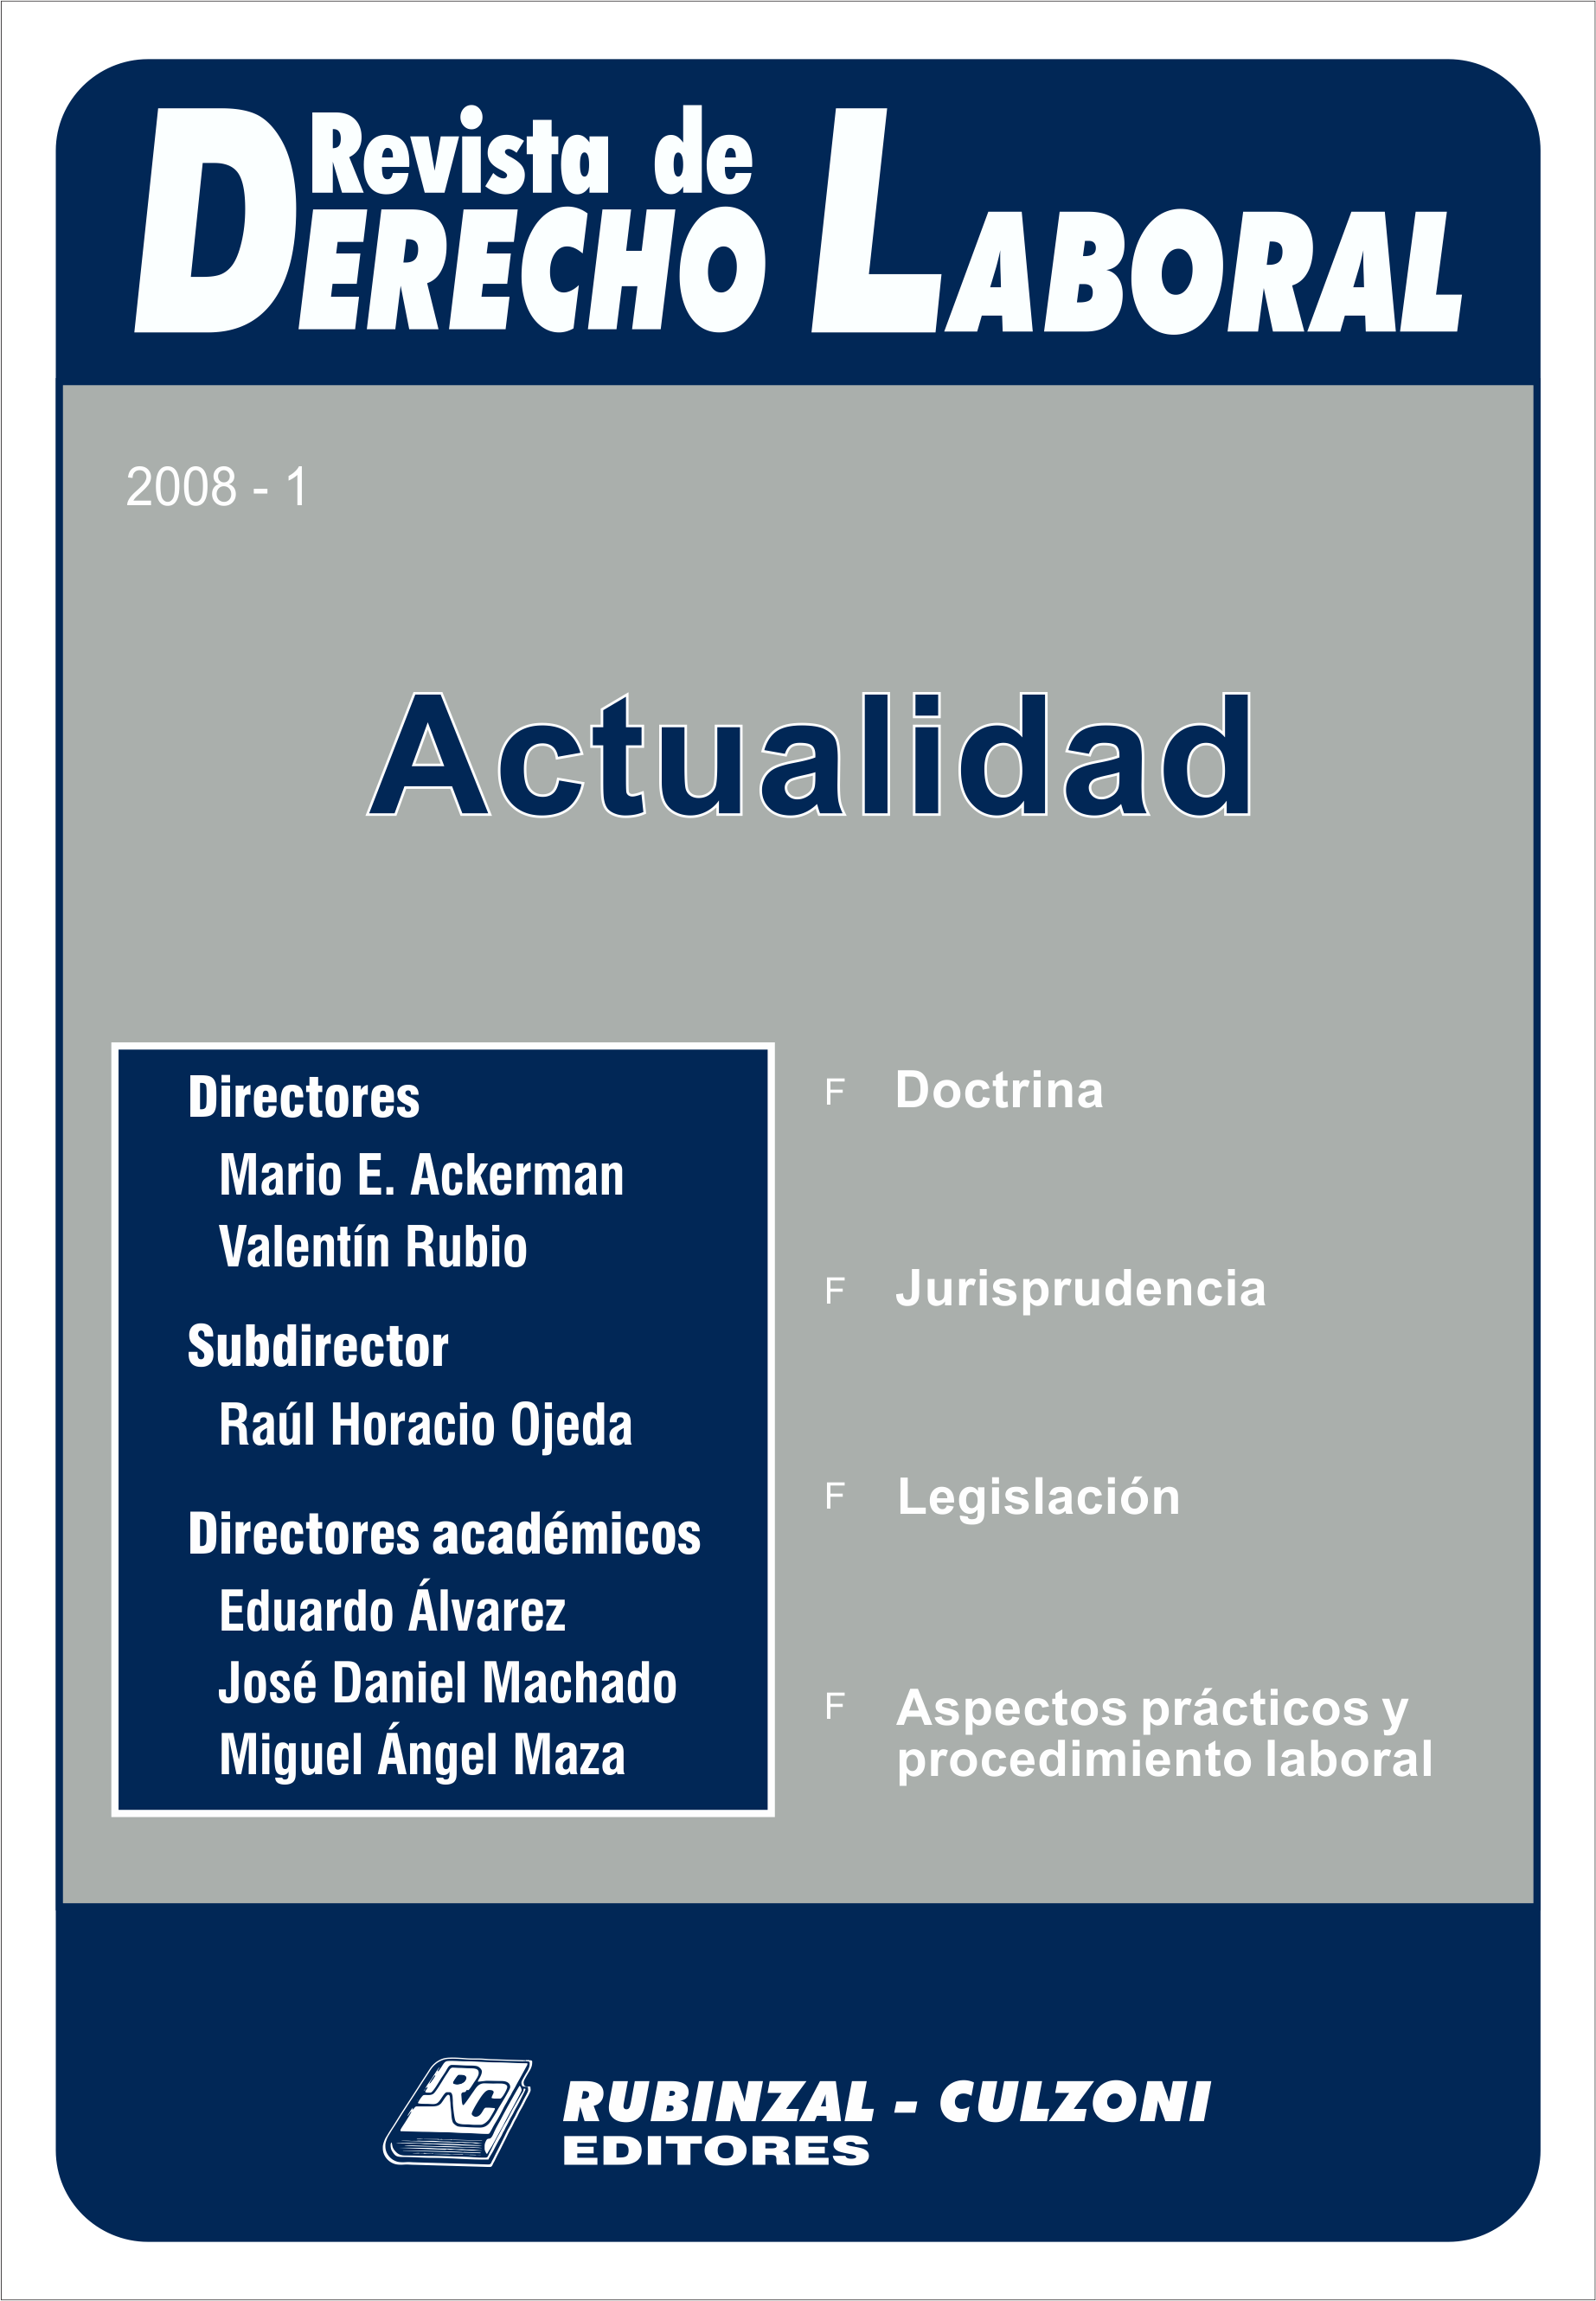 Revista de Derecho Laboral Actualidad - Año 2008 - 1.